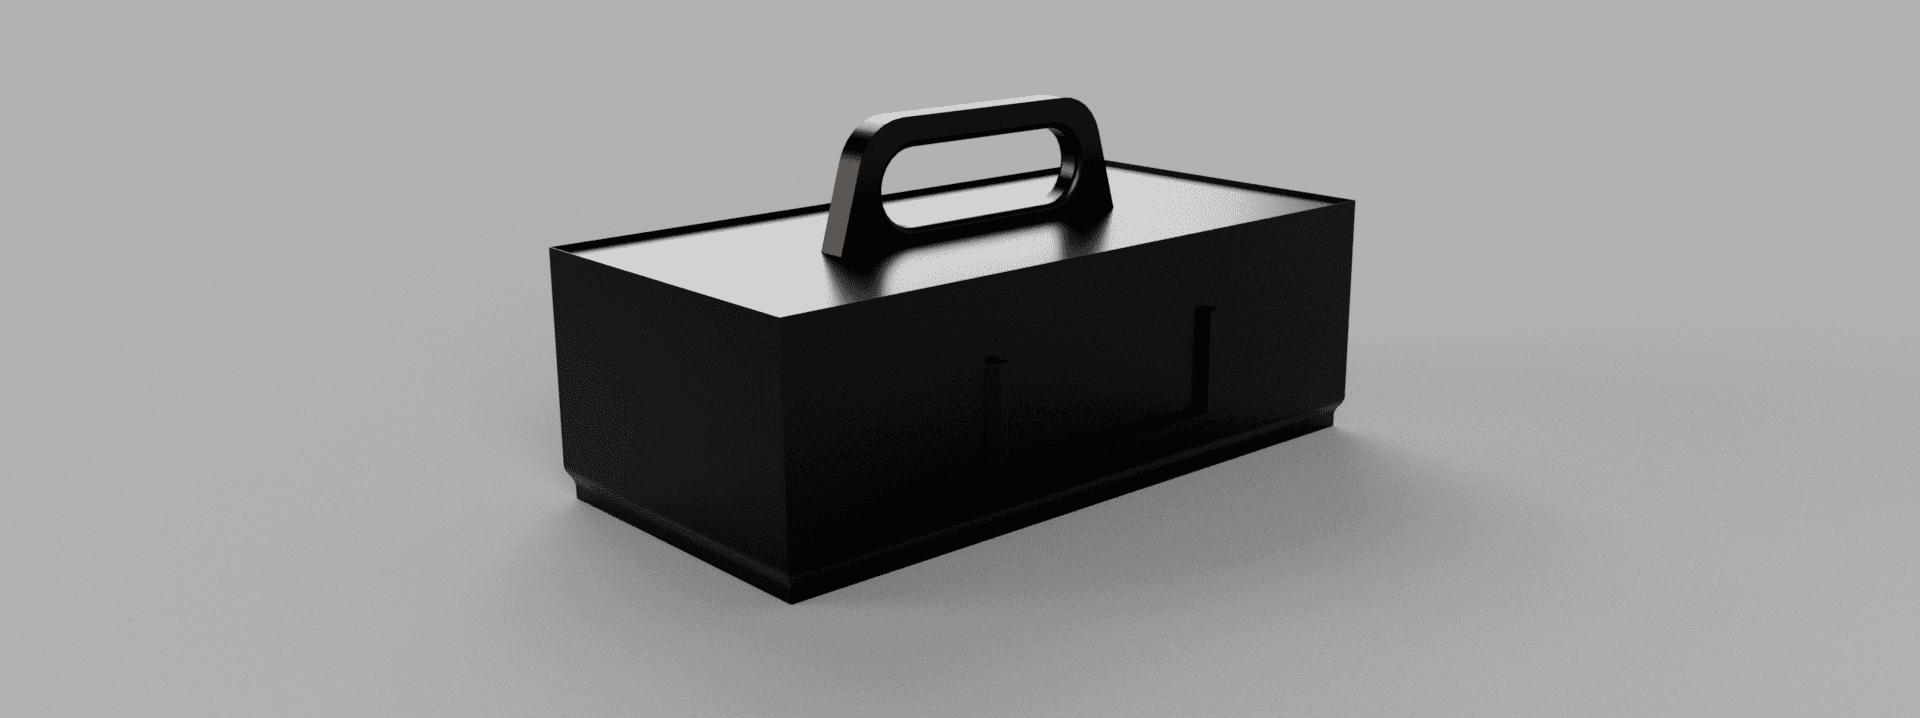 Stackable tool box 3d model